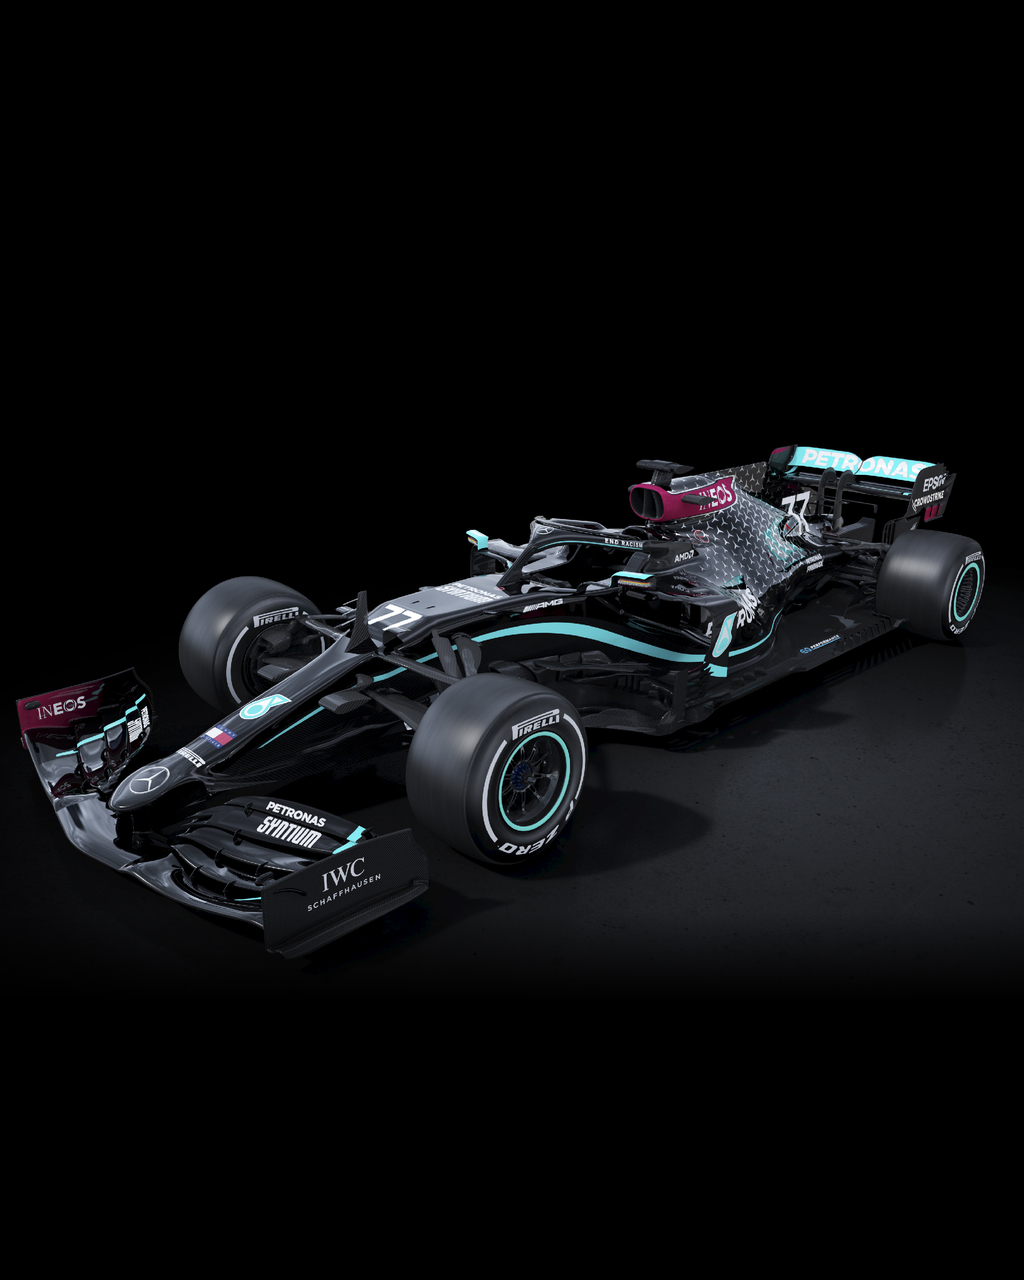 La escudería Mercedes de la Fórmula Uno utilizará autos negros esta temporada para combatir el racismo. . (Cortesía Mercedes)